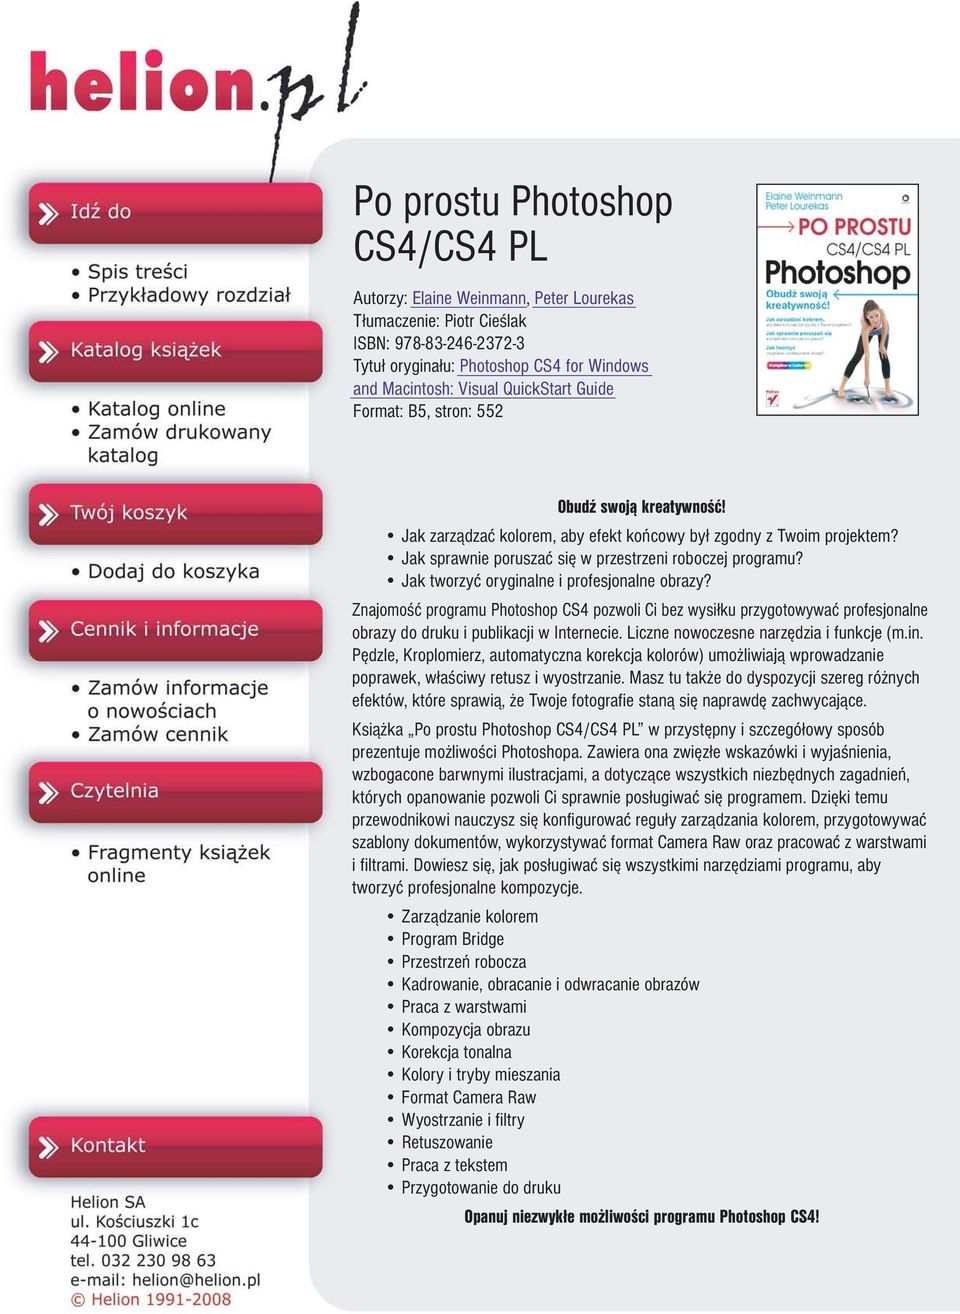 Jak tworzyæ oryginalne i profesjonalne obrazy? Znajomoœæ programu Photoshop CS4 pozwoli Ci bez wysi³ku przygotowywaæ profesjonalne obrazy do druku i publikacji w Internecie.